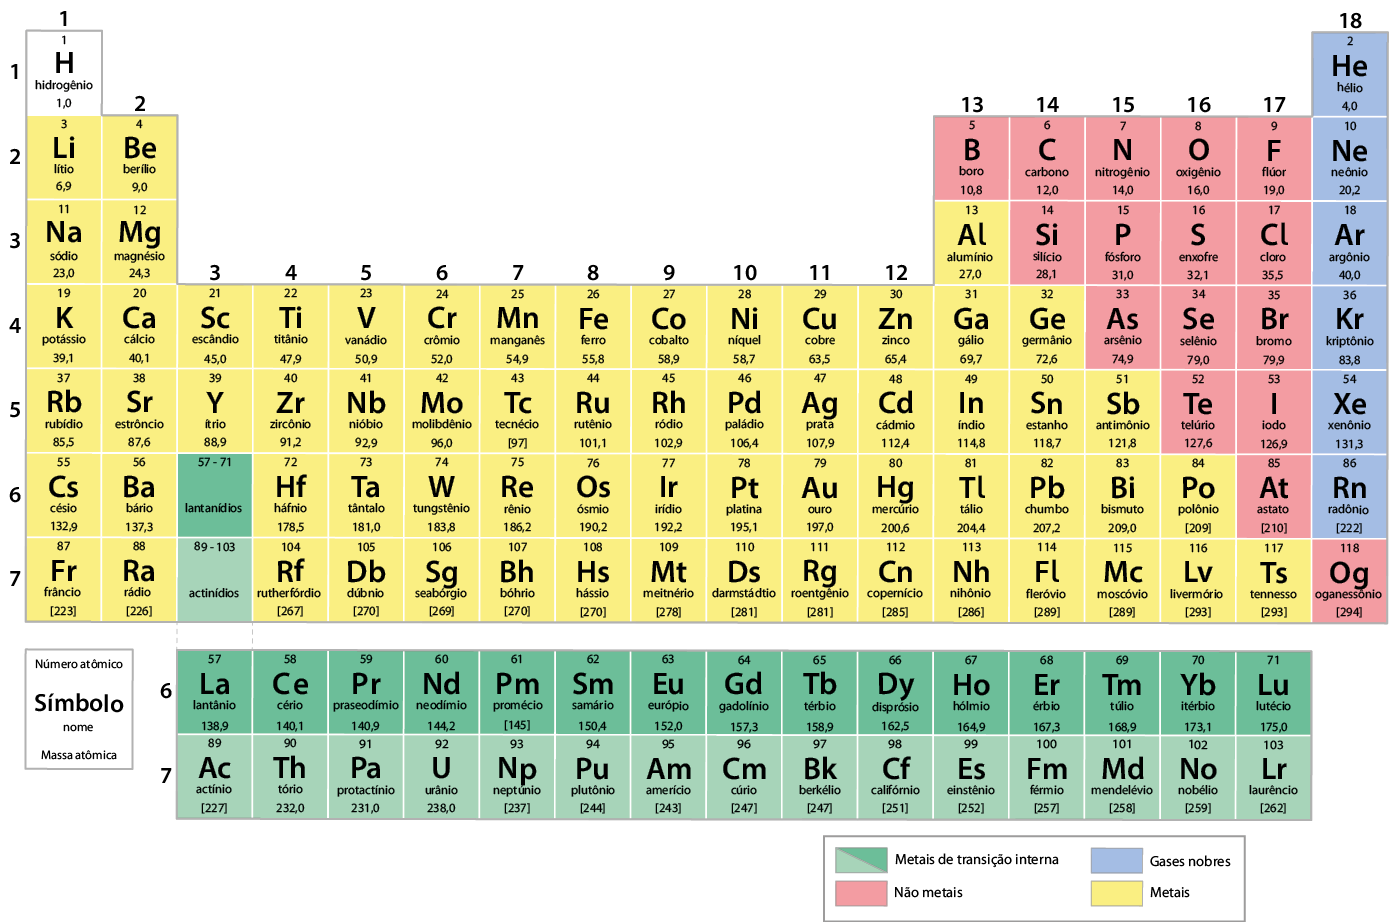 Ilustração. Tabela periódica dos elementos químicos, com 18 colunas e 7 linhas. Na parte inferior há uma legenda com cores: em verde-escuro e claro, os metais de transição interna; em azul, os gases nobres; em vermelho, os não metais; e em amarelo, os metais. Na parte inferior esquerda, há um quadrado indicando quais informações estão presentes na tabela, de cima para baixo: número atômico, símbolo, nome e massa atômica. As informações para cada elemento serão apresentadas nessa ordem, iniciando pela cor.  linha 1, coluna 1, em branco: 1, H, hidrogênio, 1,0; coluna 18, em azul: 2, H e, hélio, 4,0;  linha 2, coluna 1, em amarelo: 3, L i, lítio, 6,9; coluna 2, em amarelo: 4, B e, berílio, 9,0; coluna 13, em vermelho: 5, B, boro, 10,8; coluna 14, em vermelho: 6, C, carbono, 12,0; coluna 15, em vermelho: 7, N, nitrogênio, 14,0; coluna 16, em vermelho: 8, O, oxigênio, 16,0; coluna 17, em vermelho: 9, F, flúor, 19,0; coluna 18, em azul: 10, N e, neônio, 20,2;  linha 3, coluna 1, em amarelo: 11, N a, sódio, 23,0; coluna 2, em amarelo: 12, M g, magnésio, 24,3; coluna 13, em amarelo: 13, A l, alumínio, 27,0; coluna 14, em vermelho: 14, S i, silício, 28,1; coluna 15, em vermelho: 15, P, fósforo, 31,0; coluna 16, em vermelho: 16, S, enxofre, 32,1; coluna 17, em vermelho: 17, C l, cloro, 35,5; coluna 18, em azul: 18, A r, argônio, 40,0;   linha 4, coluna 1, em amarelo: 19, K, potássio, 39,1; coluna 2, em amarelo: 20, C a, cálcio, 40,1; coluna 3, em amarelo: 21, S c, escândio, 45,0; coluna 4, em amarelo: 22, T i, titânio, 47,9; coluna 5, em amarelo: 23, V, vanádio, 50,9; coluna 6, em amarelo: 24, C r, crômio, 52,0; coluna 7, em amarelo: 25, M n, manganês, 54,9; coluna 8, em amarelo: 26, F e, ferro, 55,8; coluna 9, em amarelo: 27, C o, cobalto, 58,9; coluna 10, em amarelo: 28, N i, níquel, 58,7; coluna 11, em amarelo: 29, C u, cobre, 63,5; coluna 12, em amarelo: 30, Z n, zinco, 65,4; coluna 13, em amarelo: 31, G a, gálio, 69,7; coluna 14, em 